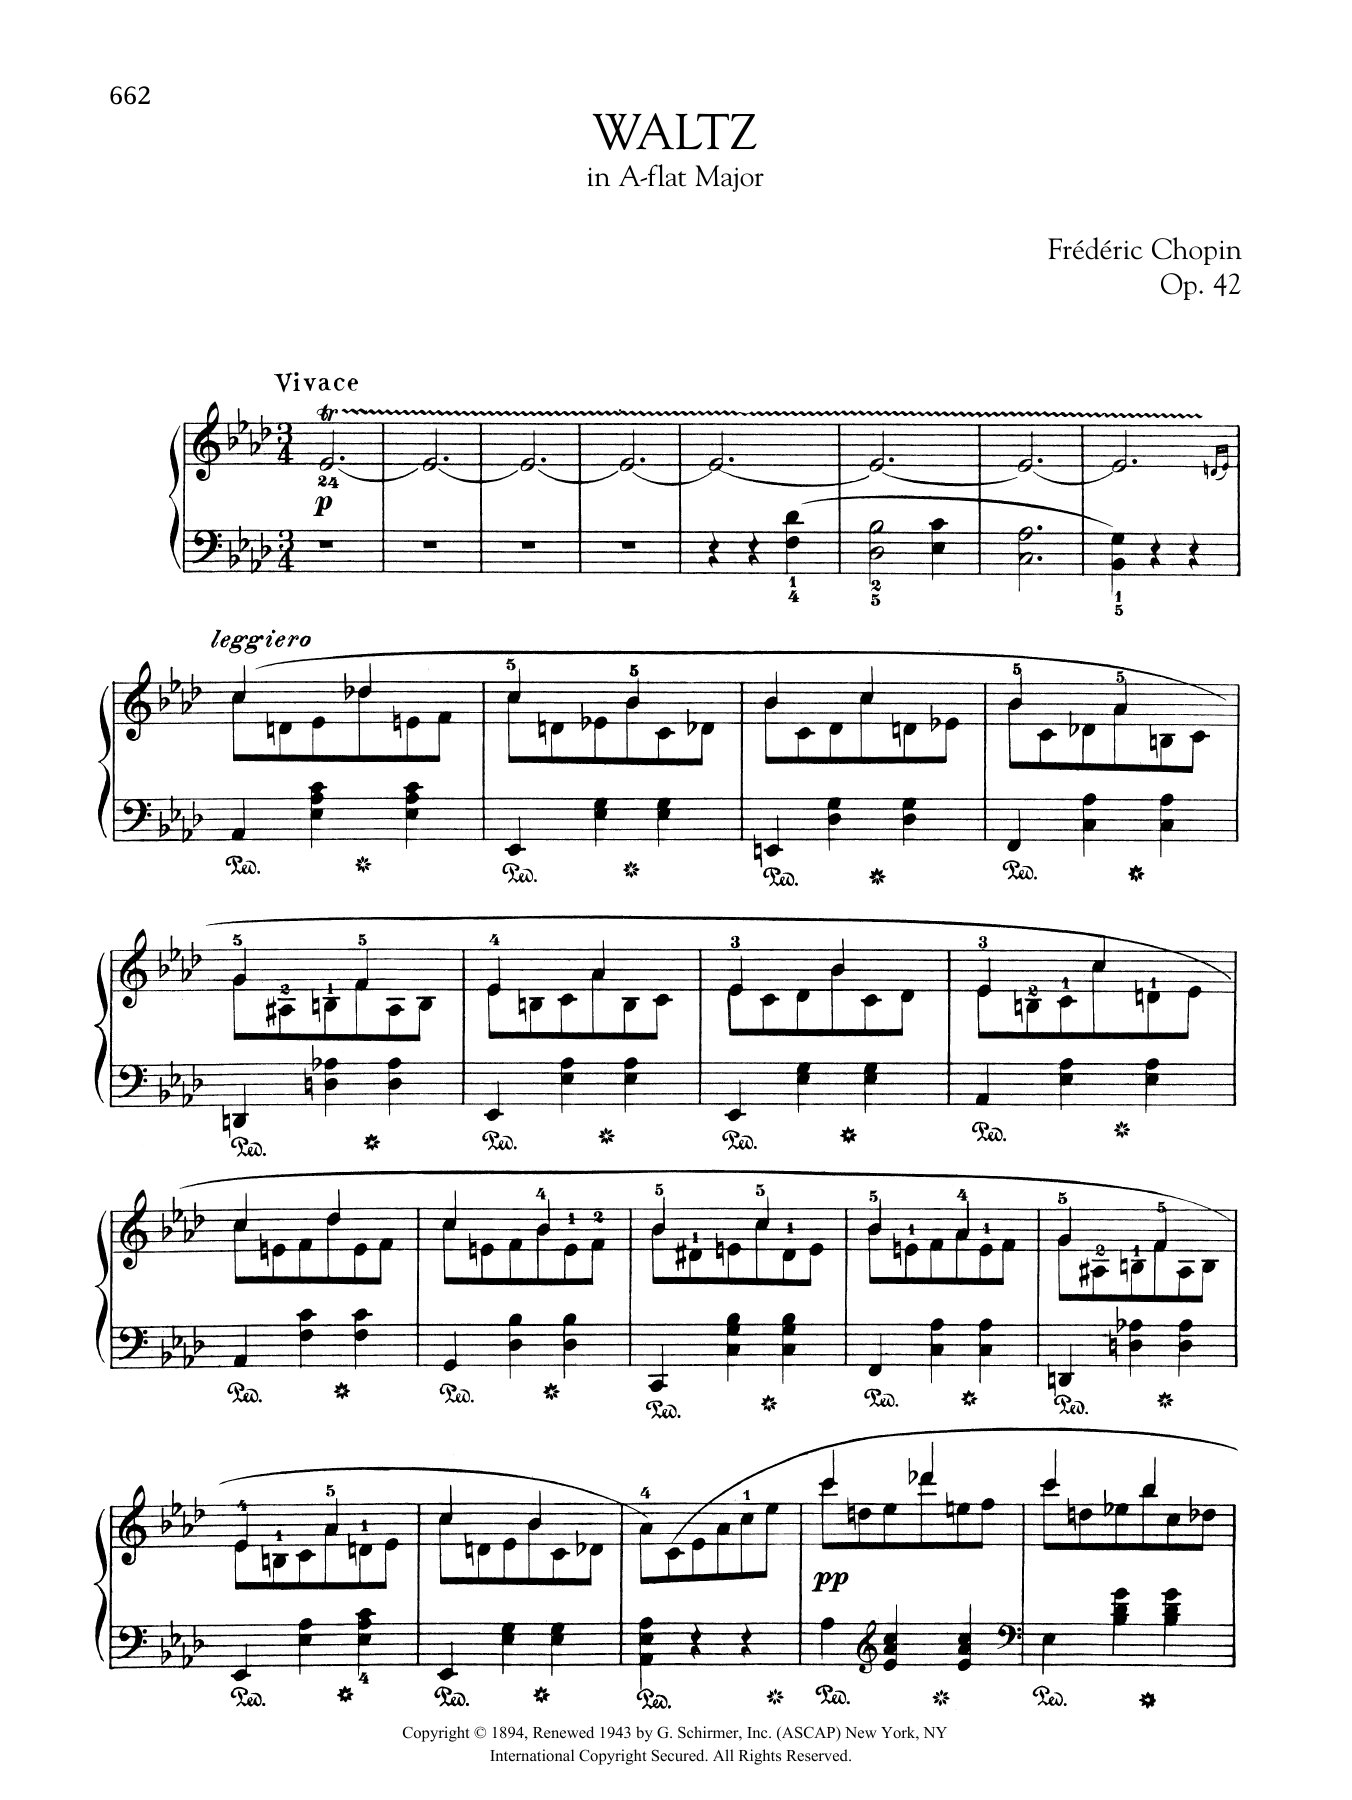 Waltz in A-flat Major, Op. 42 sheet music